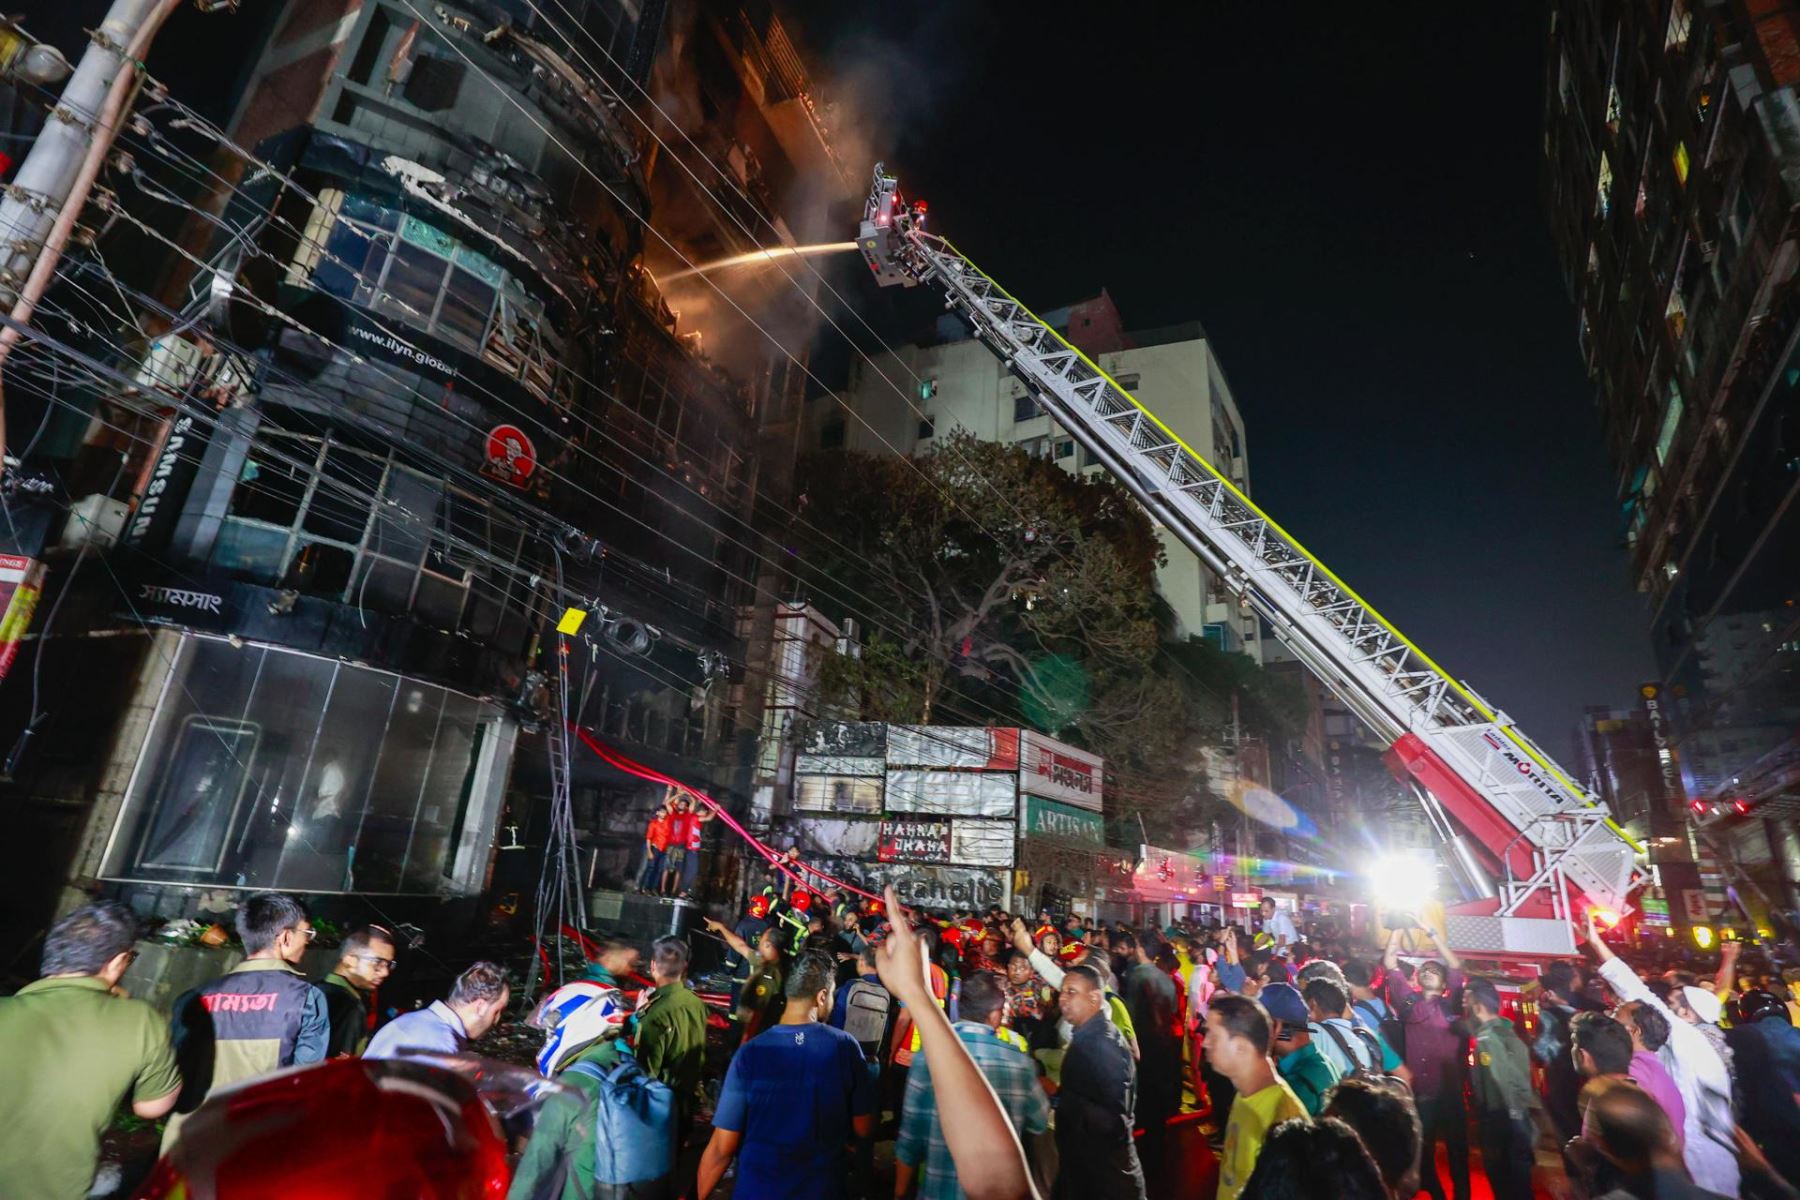 Al menos 44 personas murieron después de que un incendio devorara un edificio comercial en la capital de Bangladesh, Dhaka, durante la noche, dijeron las autoridades.
Foto: EFE